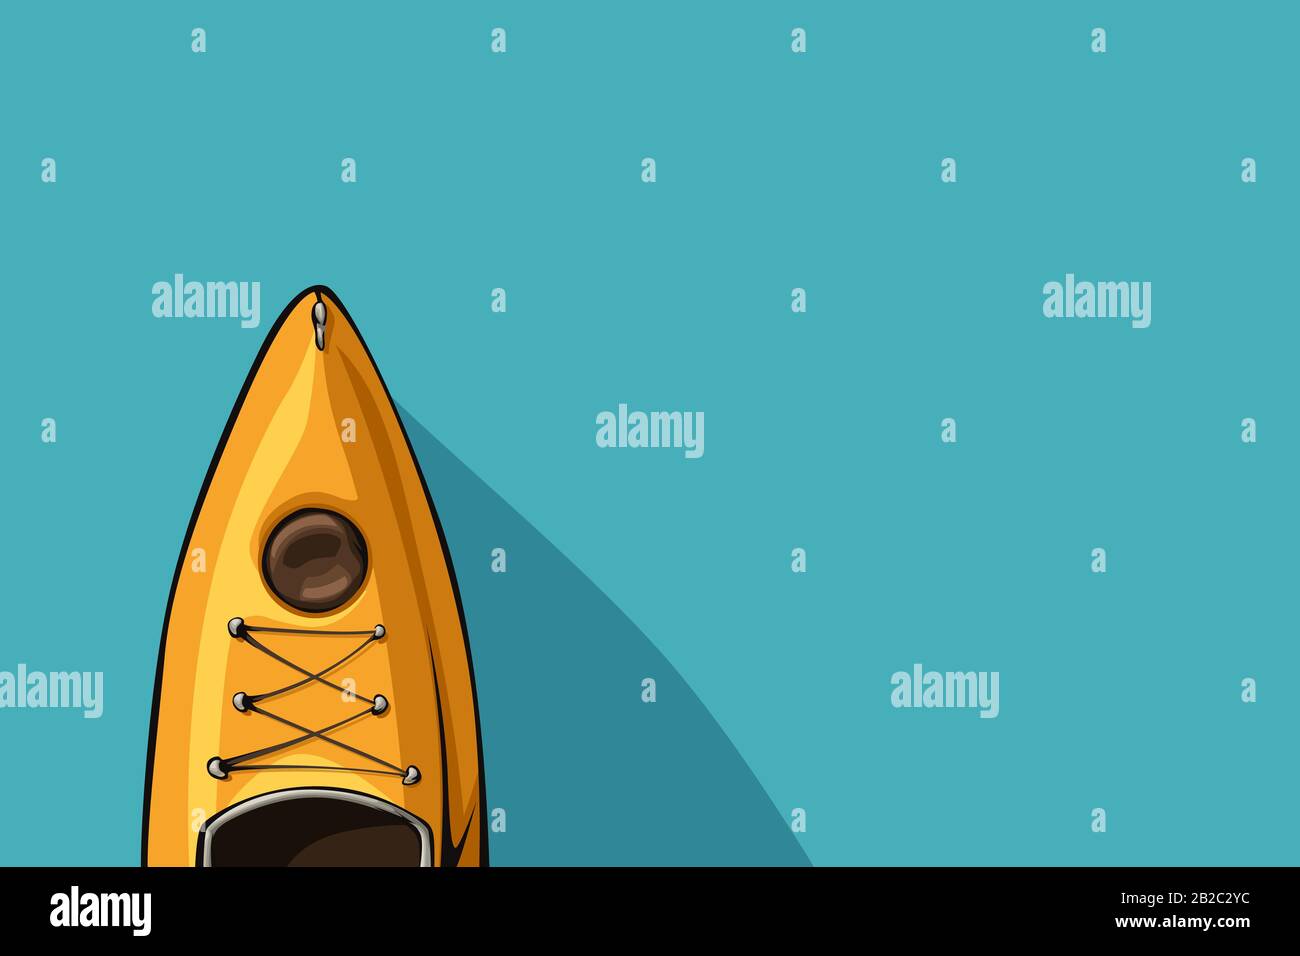 vista superior de kayak de dibujos animados amarillos Ilustración del Vector